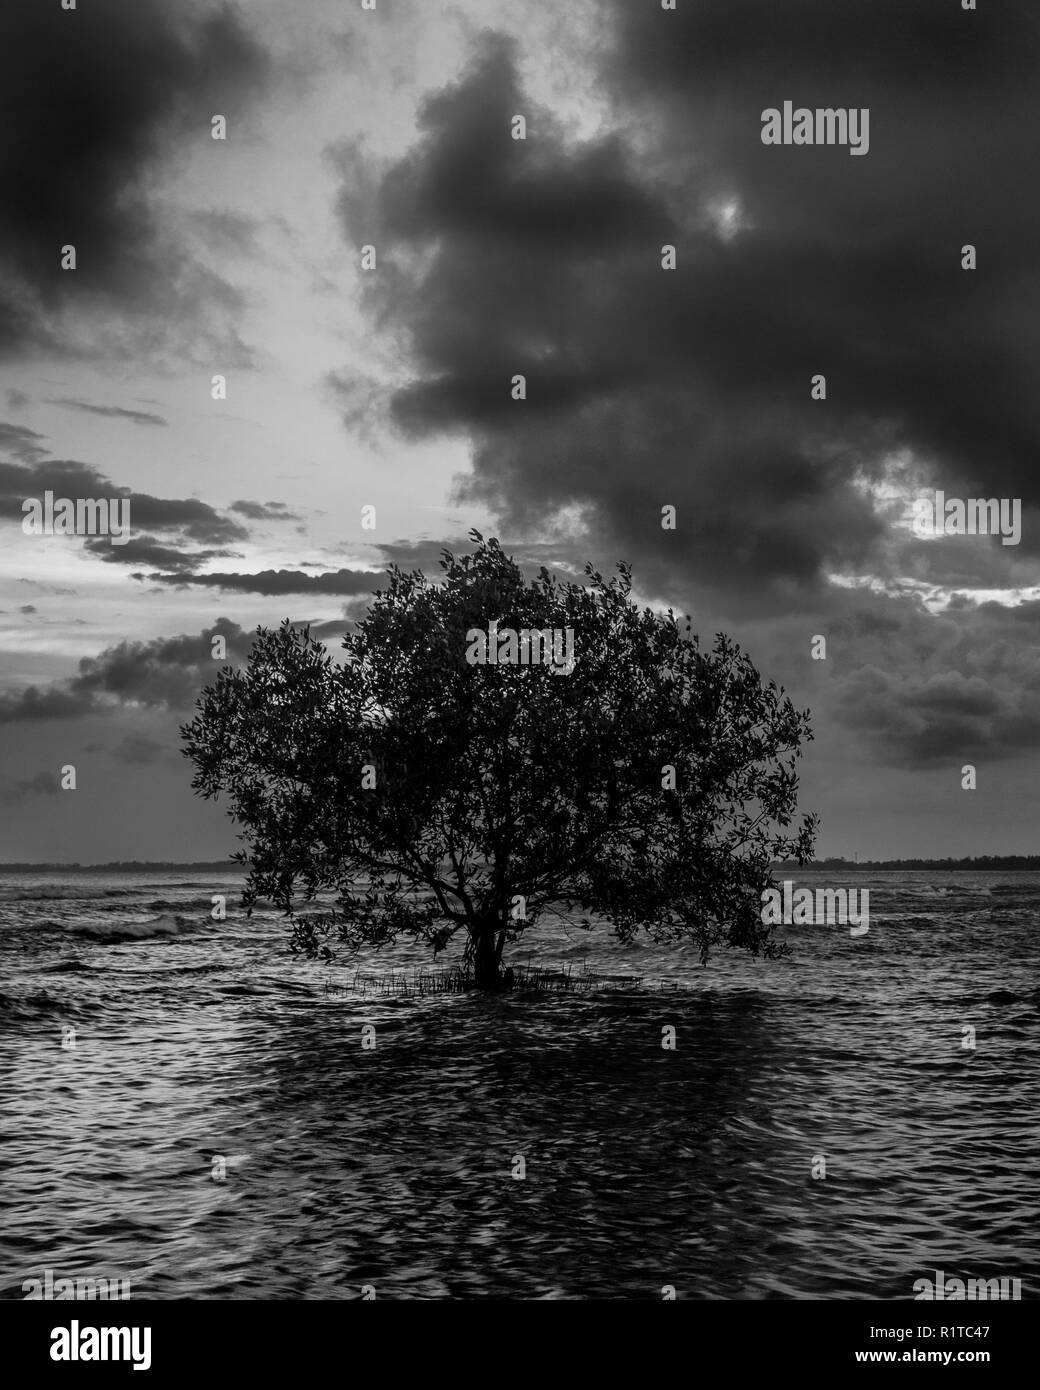 Minimalista immagine in bianco e nero di un albero in spiaggia durante la bassa marea con cielo nuvoloso scuro Foto Stock